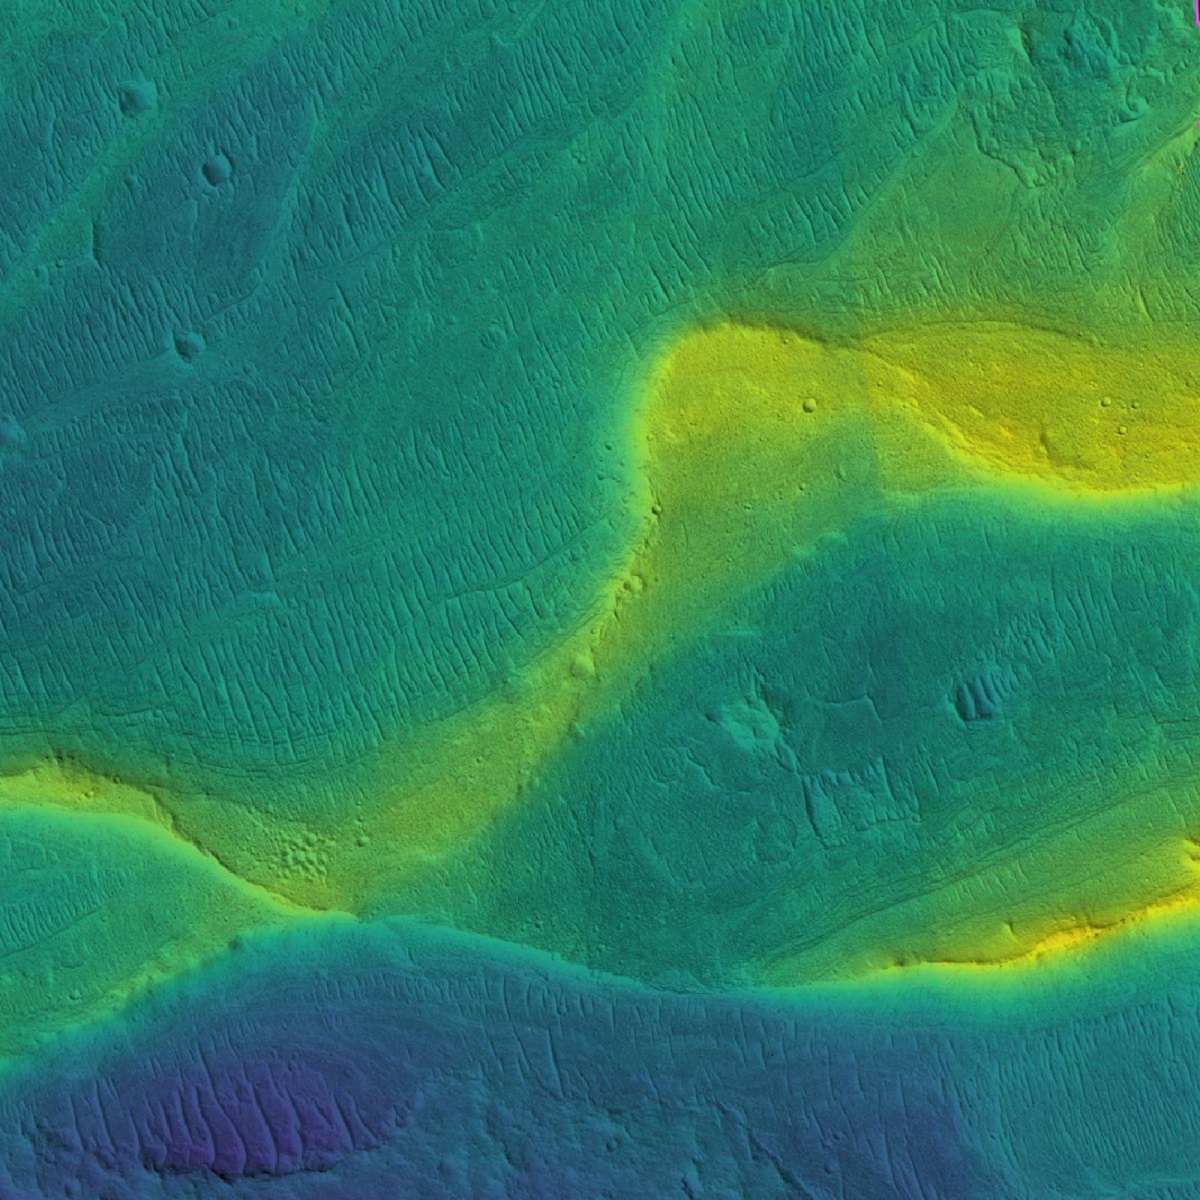 Hình ảnh dấu tích của lòng sông trên sao Hỏa được vệ tinh quỹ đạo chụp lại với các màu sắc cho thấy sự khác nhau về độ cao. Màu xanh là ở mức thấp và màu vàng là ở mức cao.